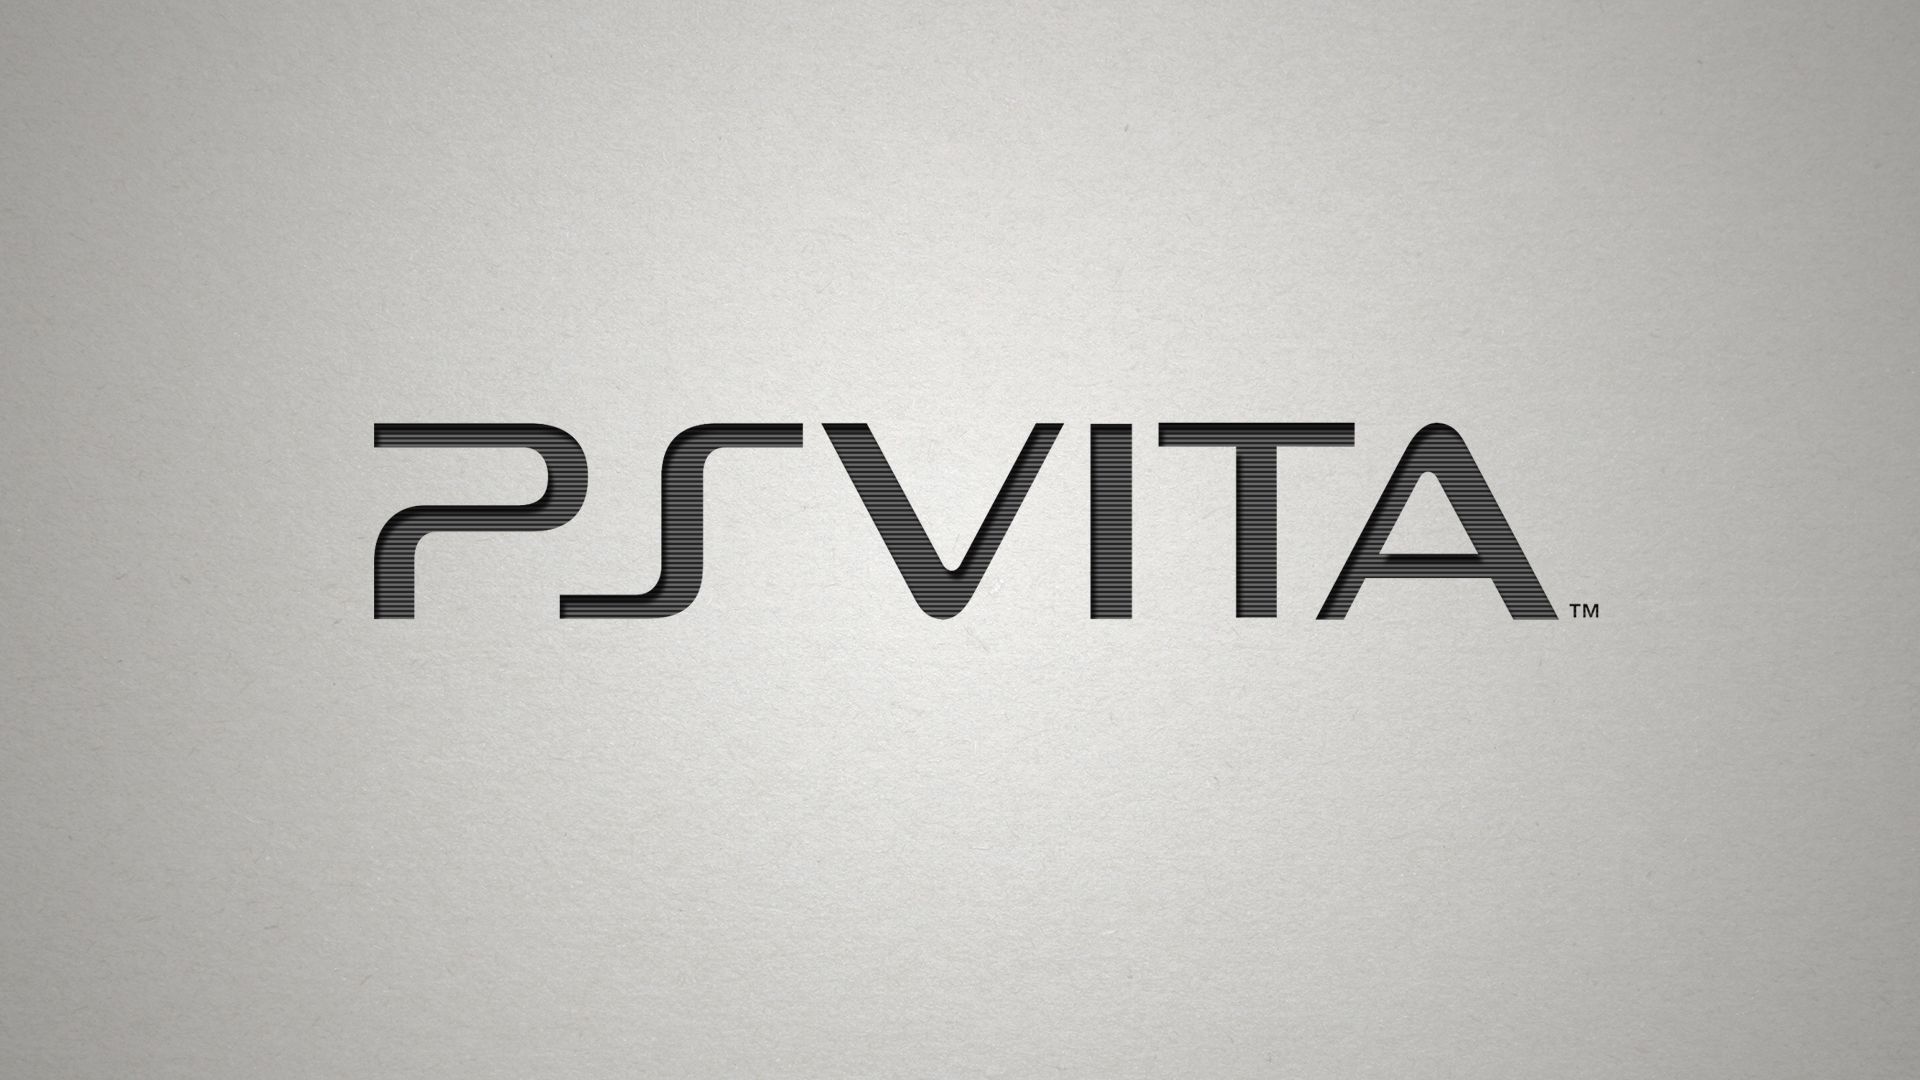 Популярные заставки и фоны Playstation Вита на компьютер